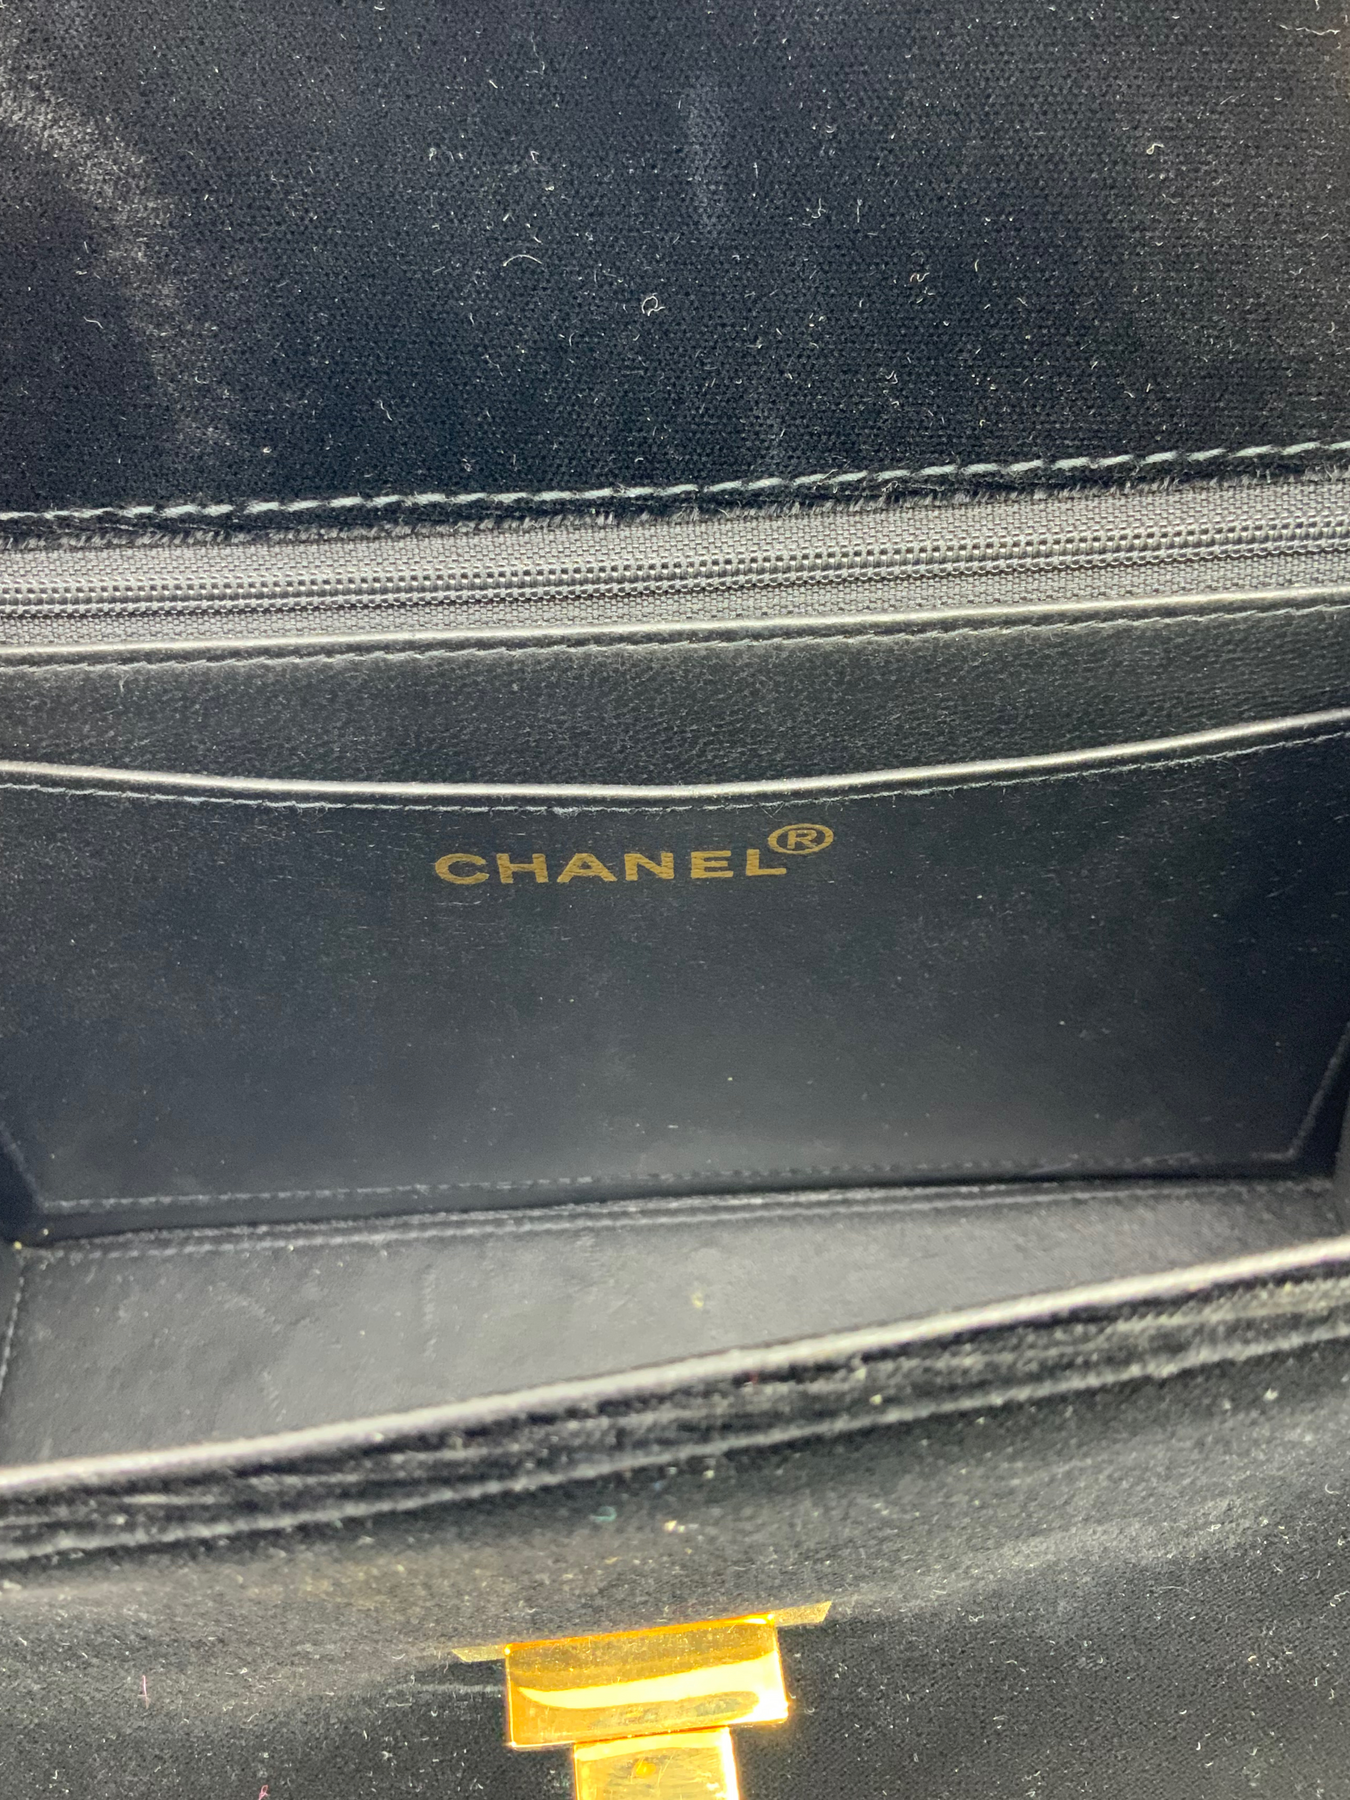 Chanel Vintage Velvet Mademoiselle Classic Single Flap Bag